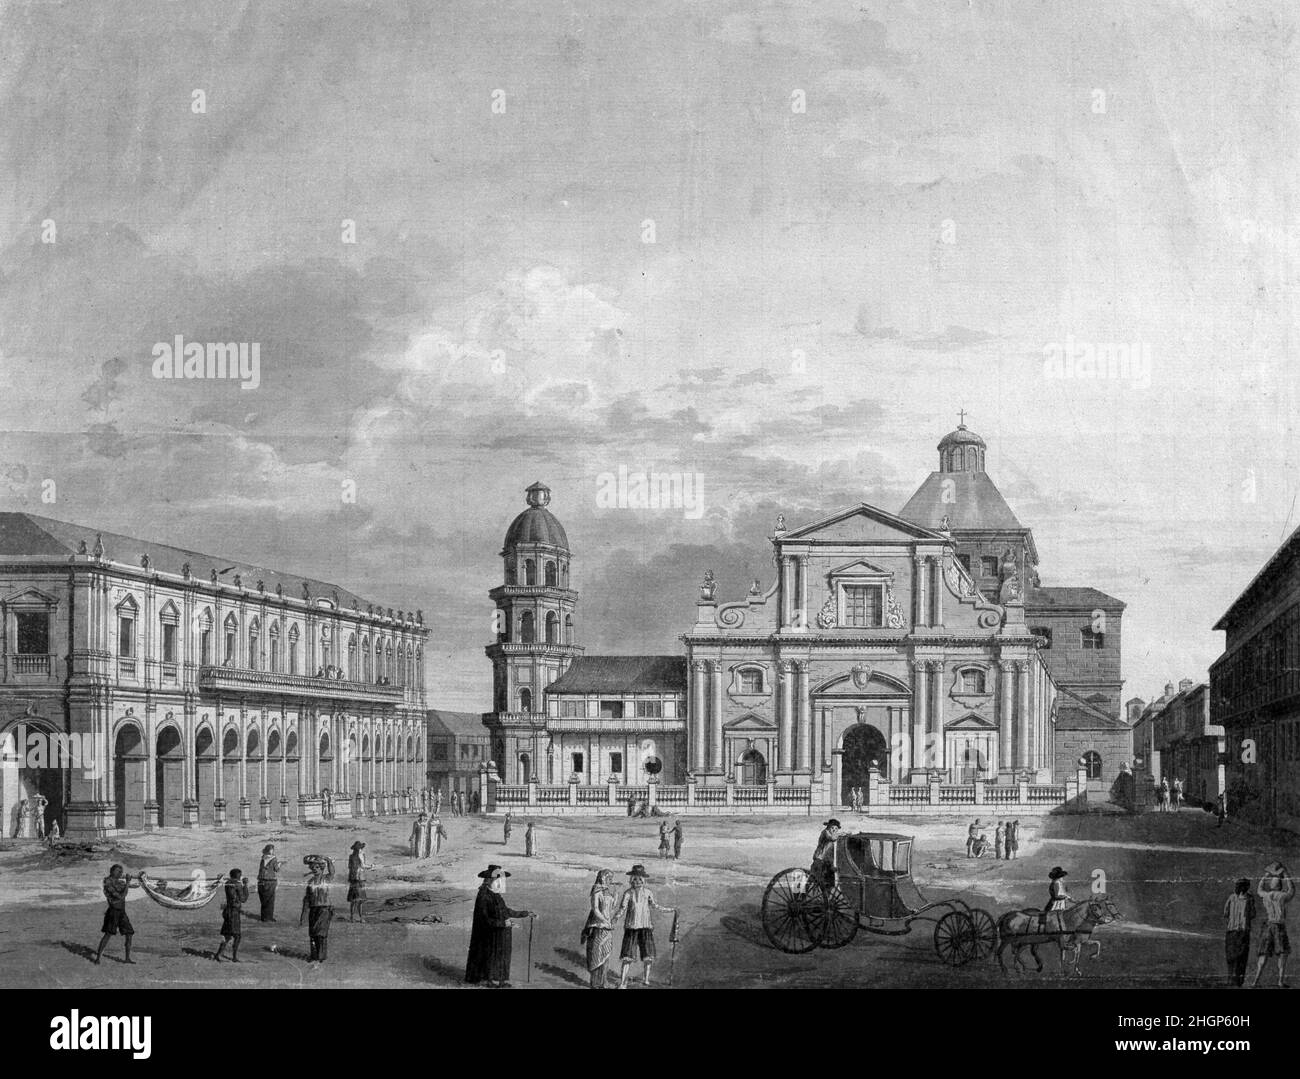 MALASPINA , ALEJANDRO. MARINO ENGLISH . 1754 - 1809. EXPEDICION CENTIFICA 1789 - 1794. ISOLE FILIPINAS . ' MANILA , PLAZA Y CATEDRAL '. DIBUJO A PLUMA DE FERNANDO BAMBRILLA. MUSEO NAVALE . MADRID. Autore: FERNANDO BRAMBILA. Foto Stock